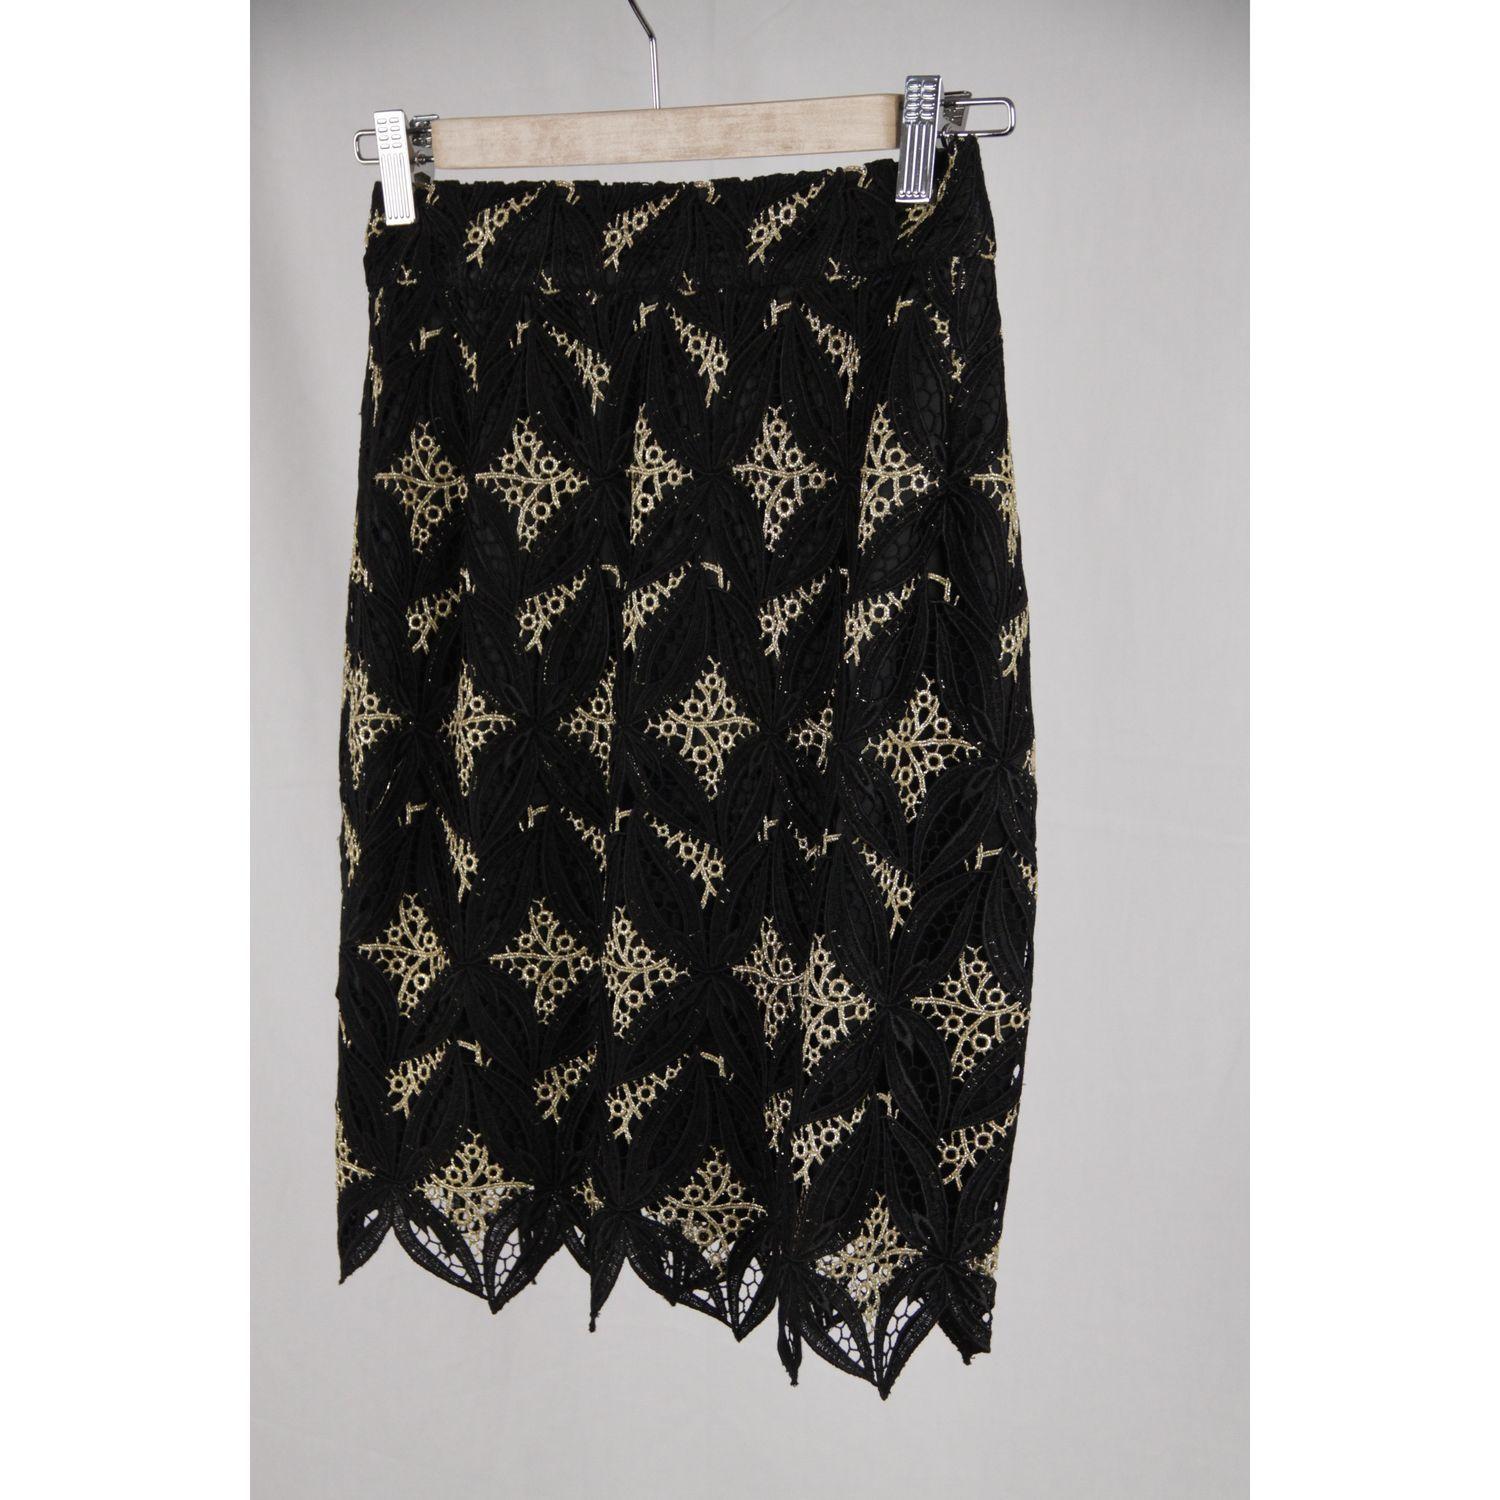 Women's Gai Mattiolo Couture Vintage Black & Golden Macrame Skirt IT Size 42